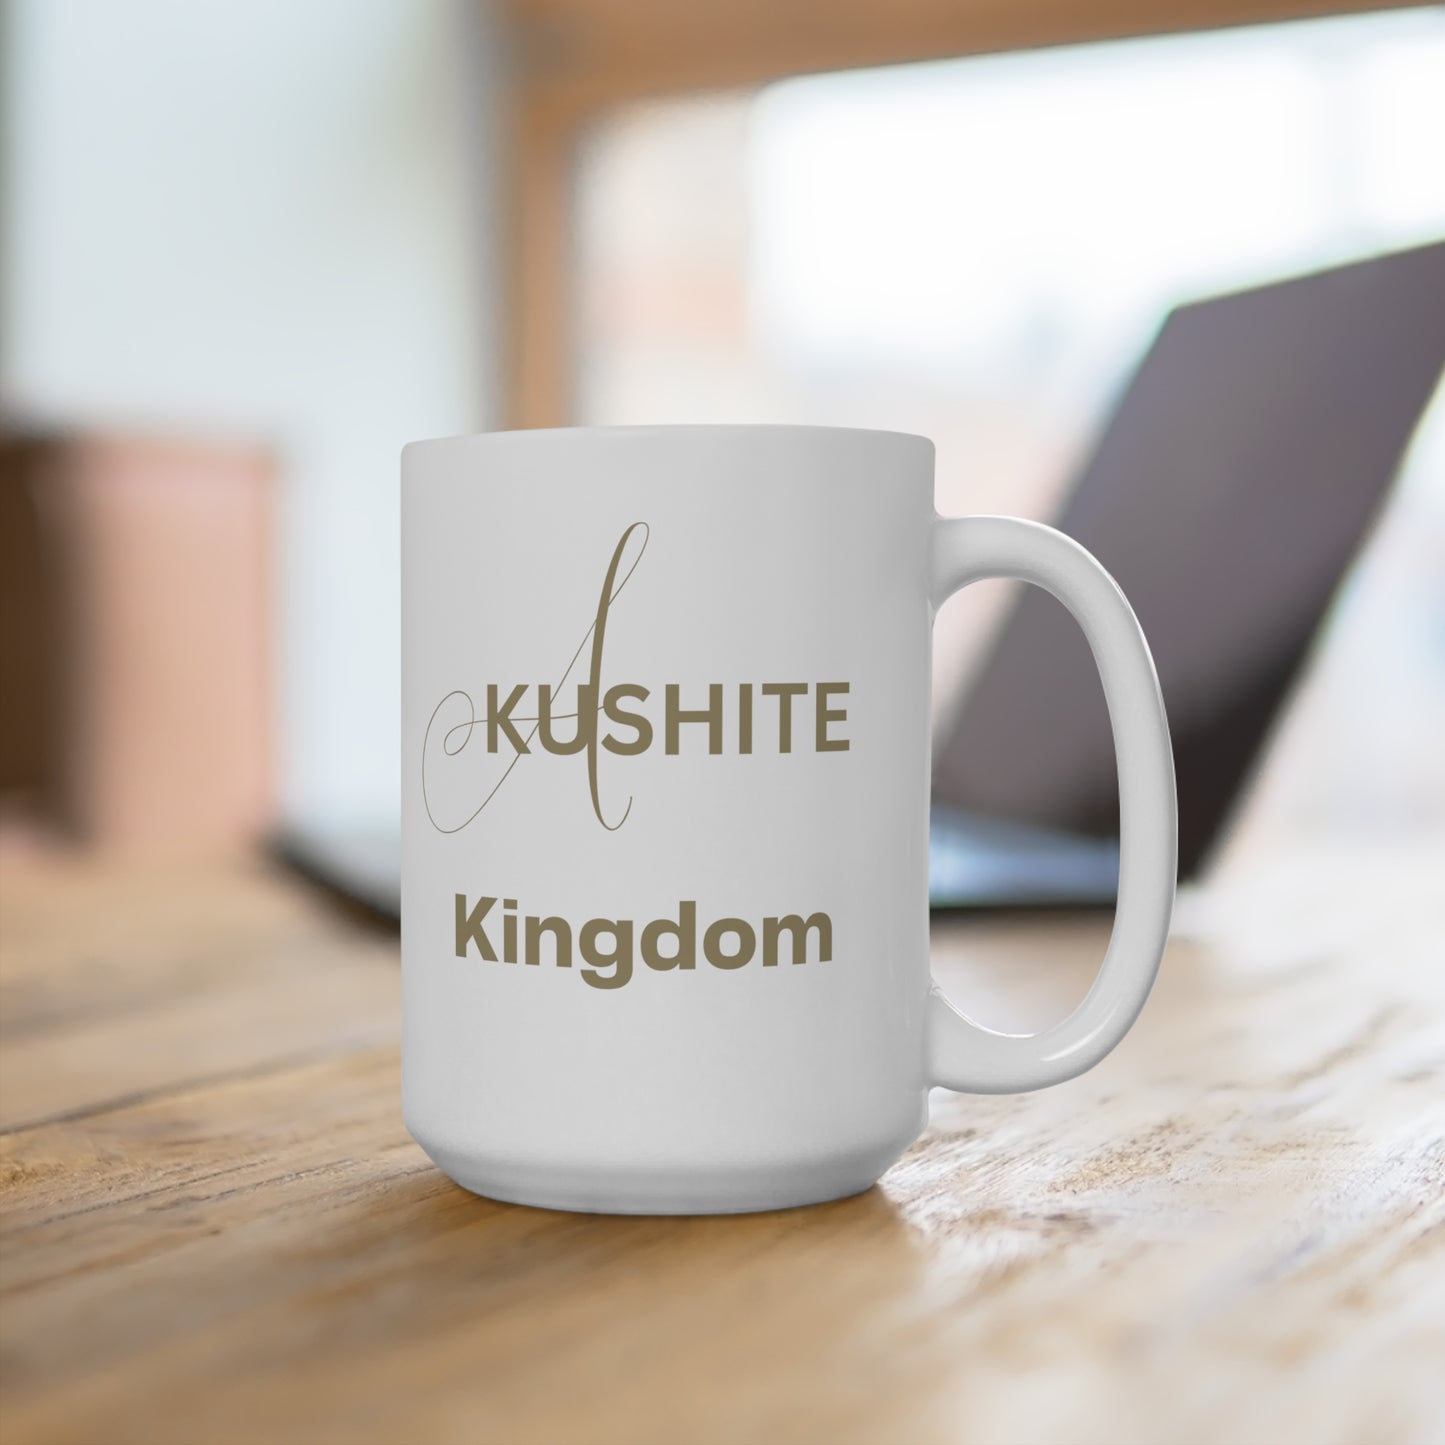 Enchanted Zeal™ "A Kushite Kingdom" Inspirational - Mug 15oz